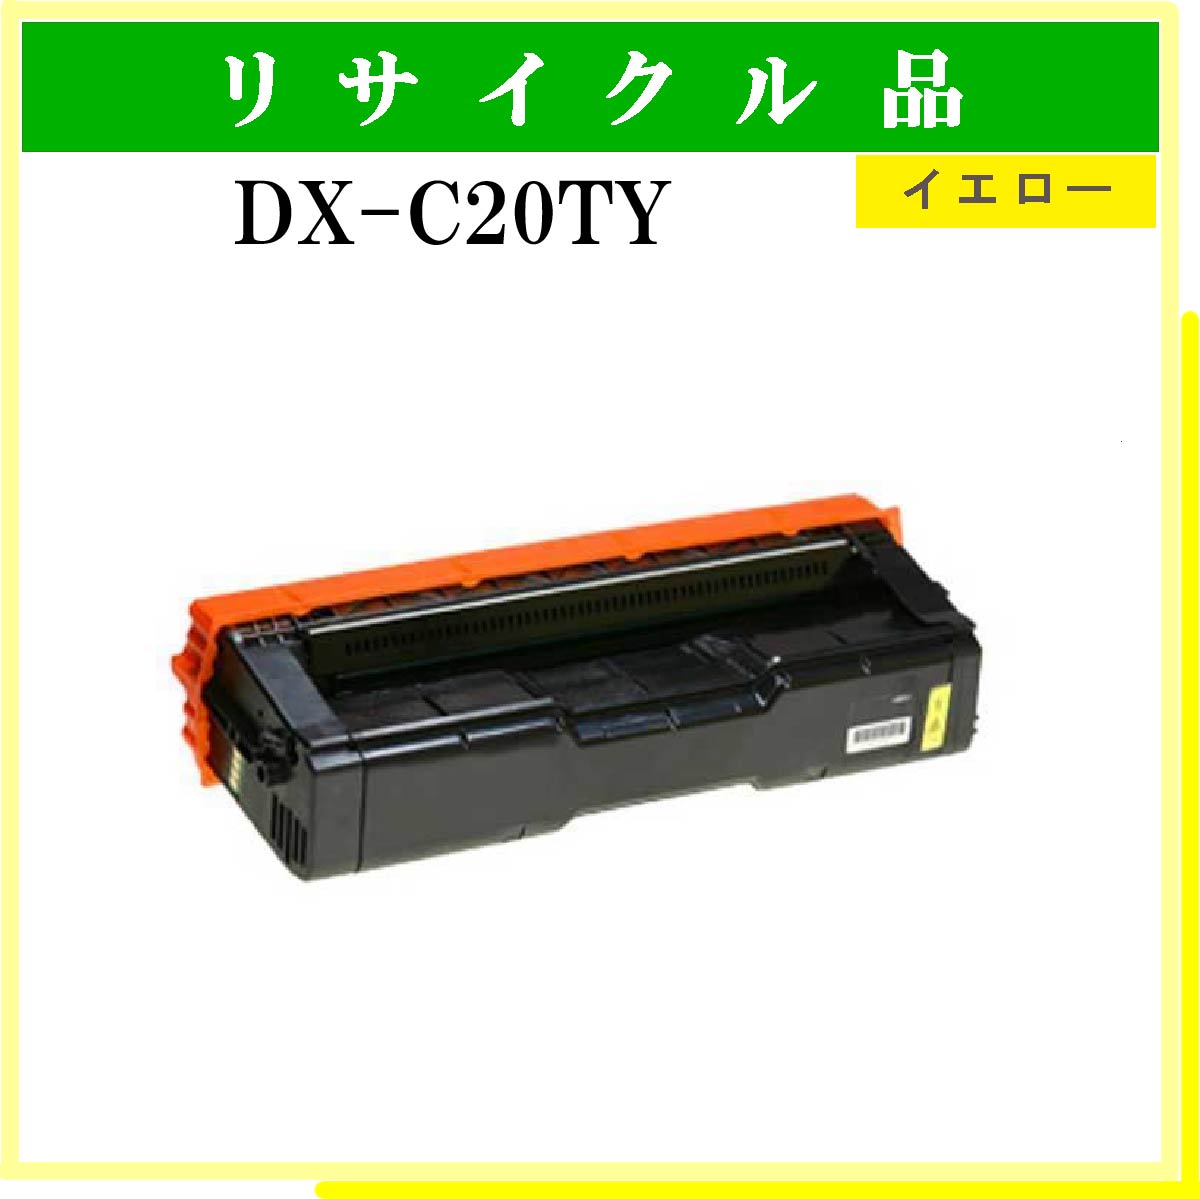 DX-C20TY